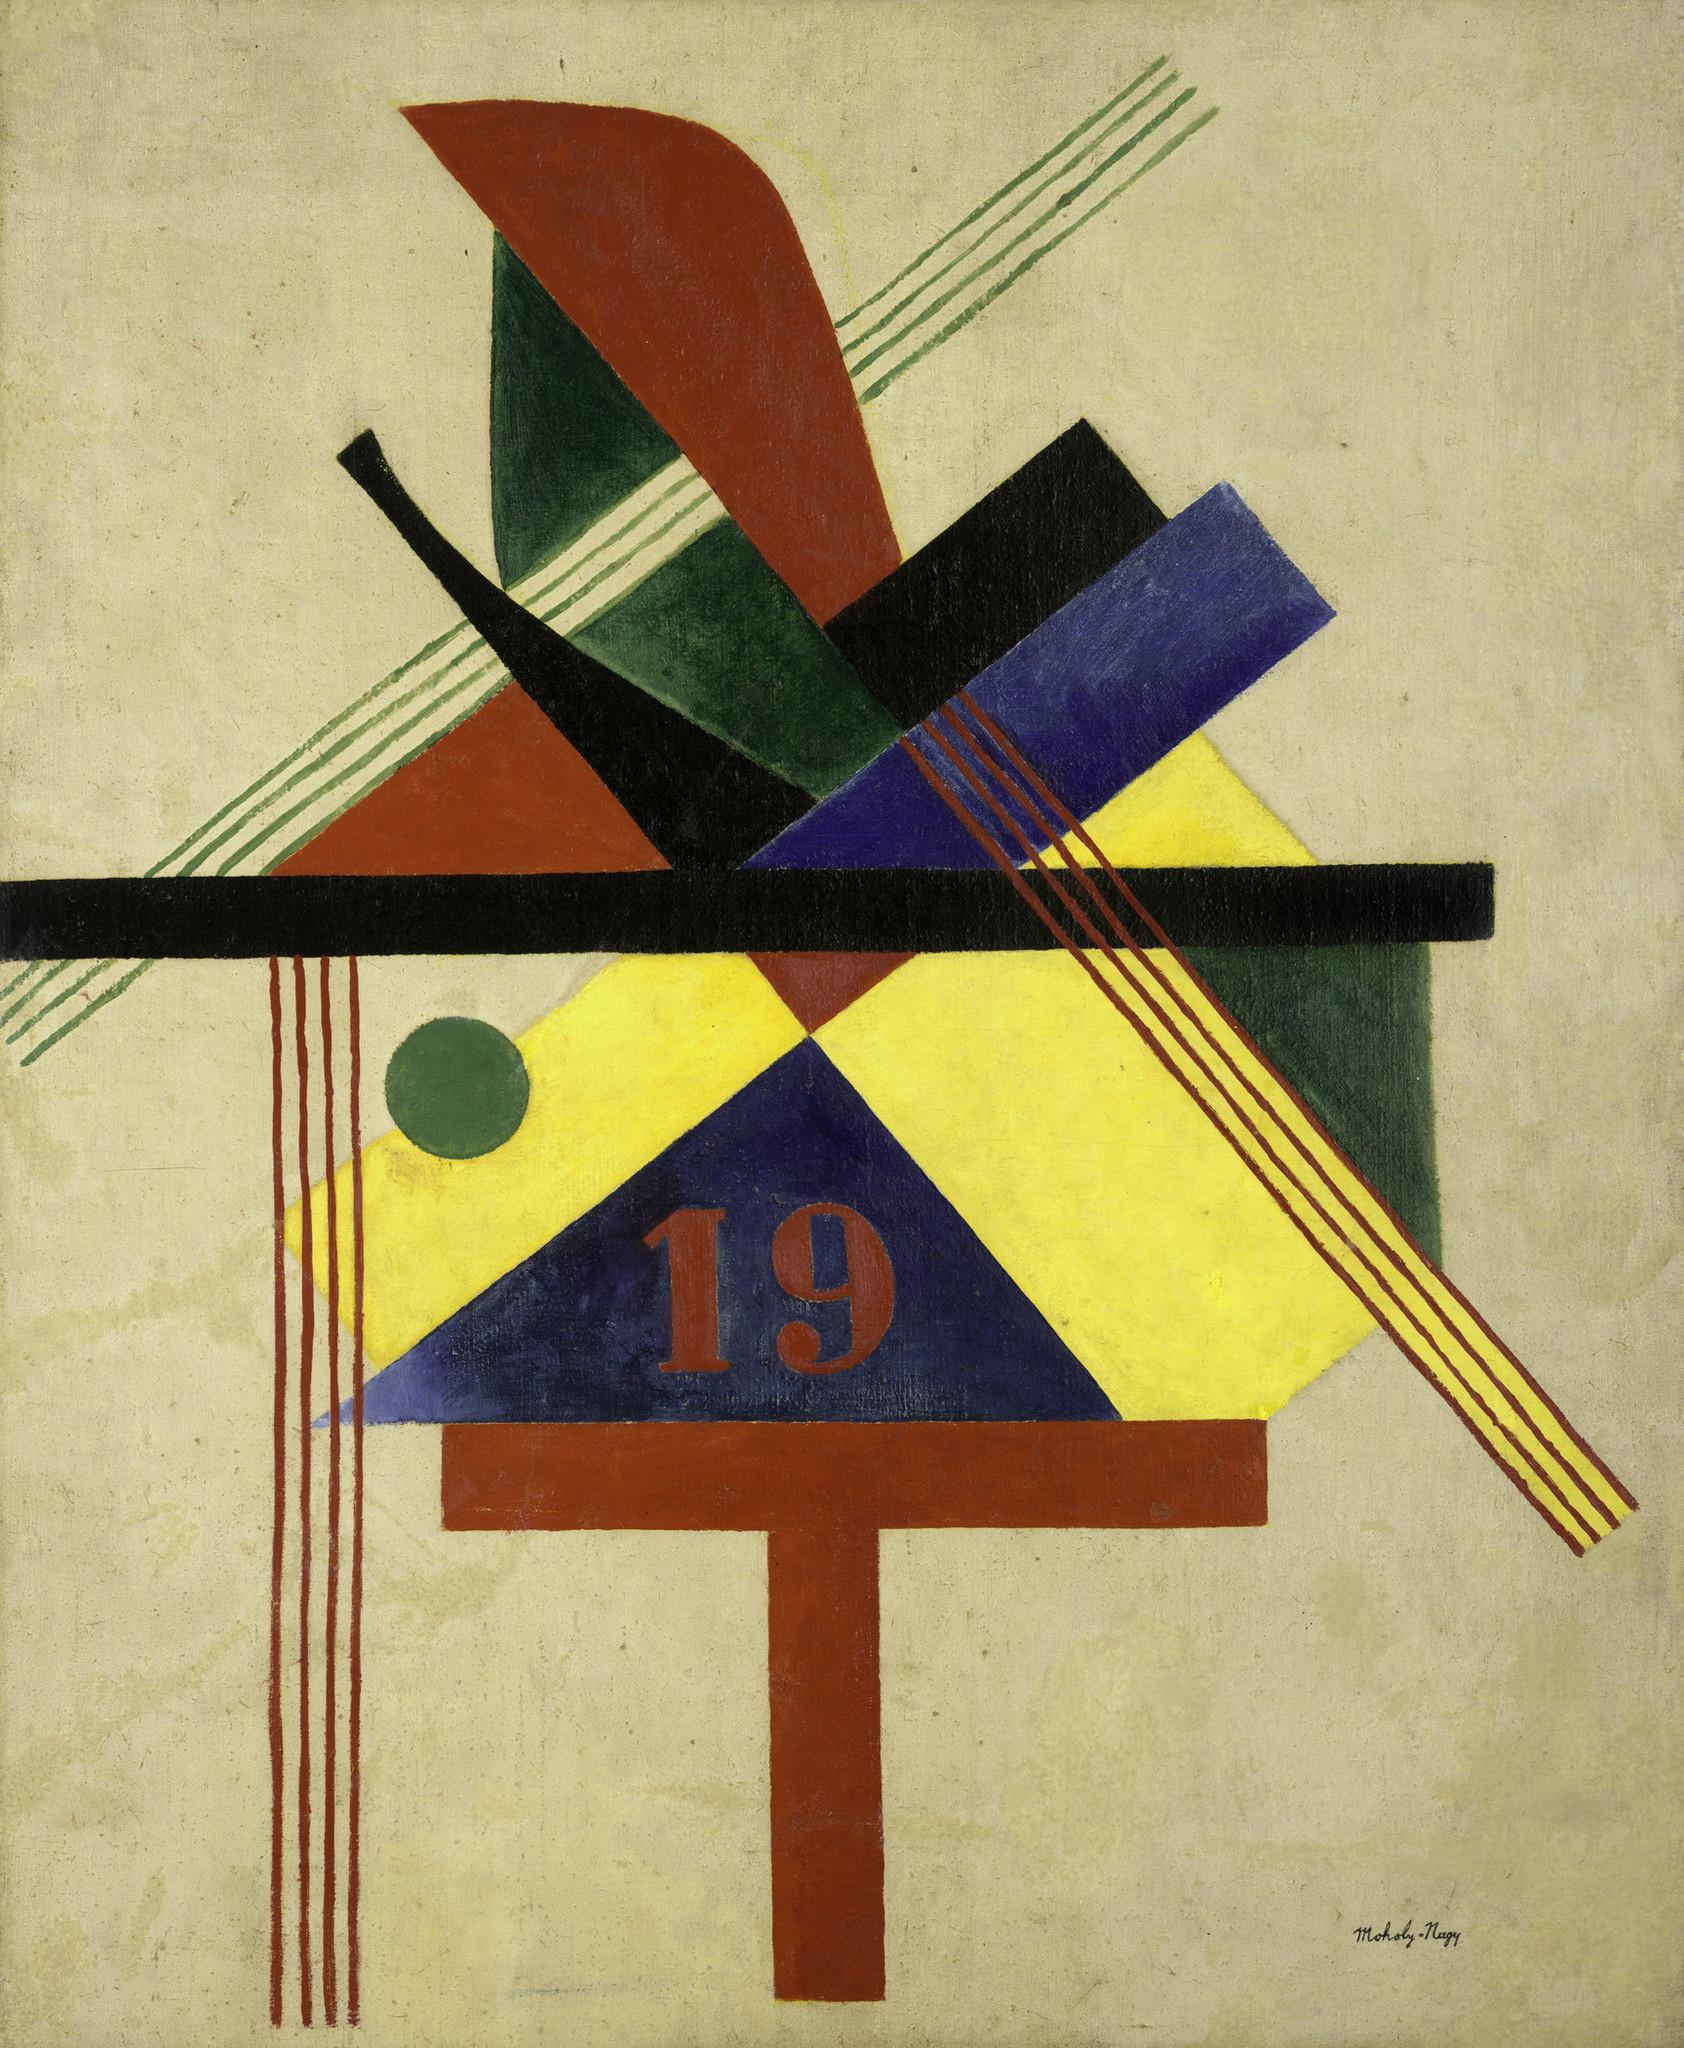 Laszlo Moholy-Nagy, "19," 1921, oil on canvas